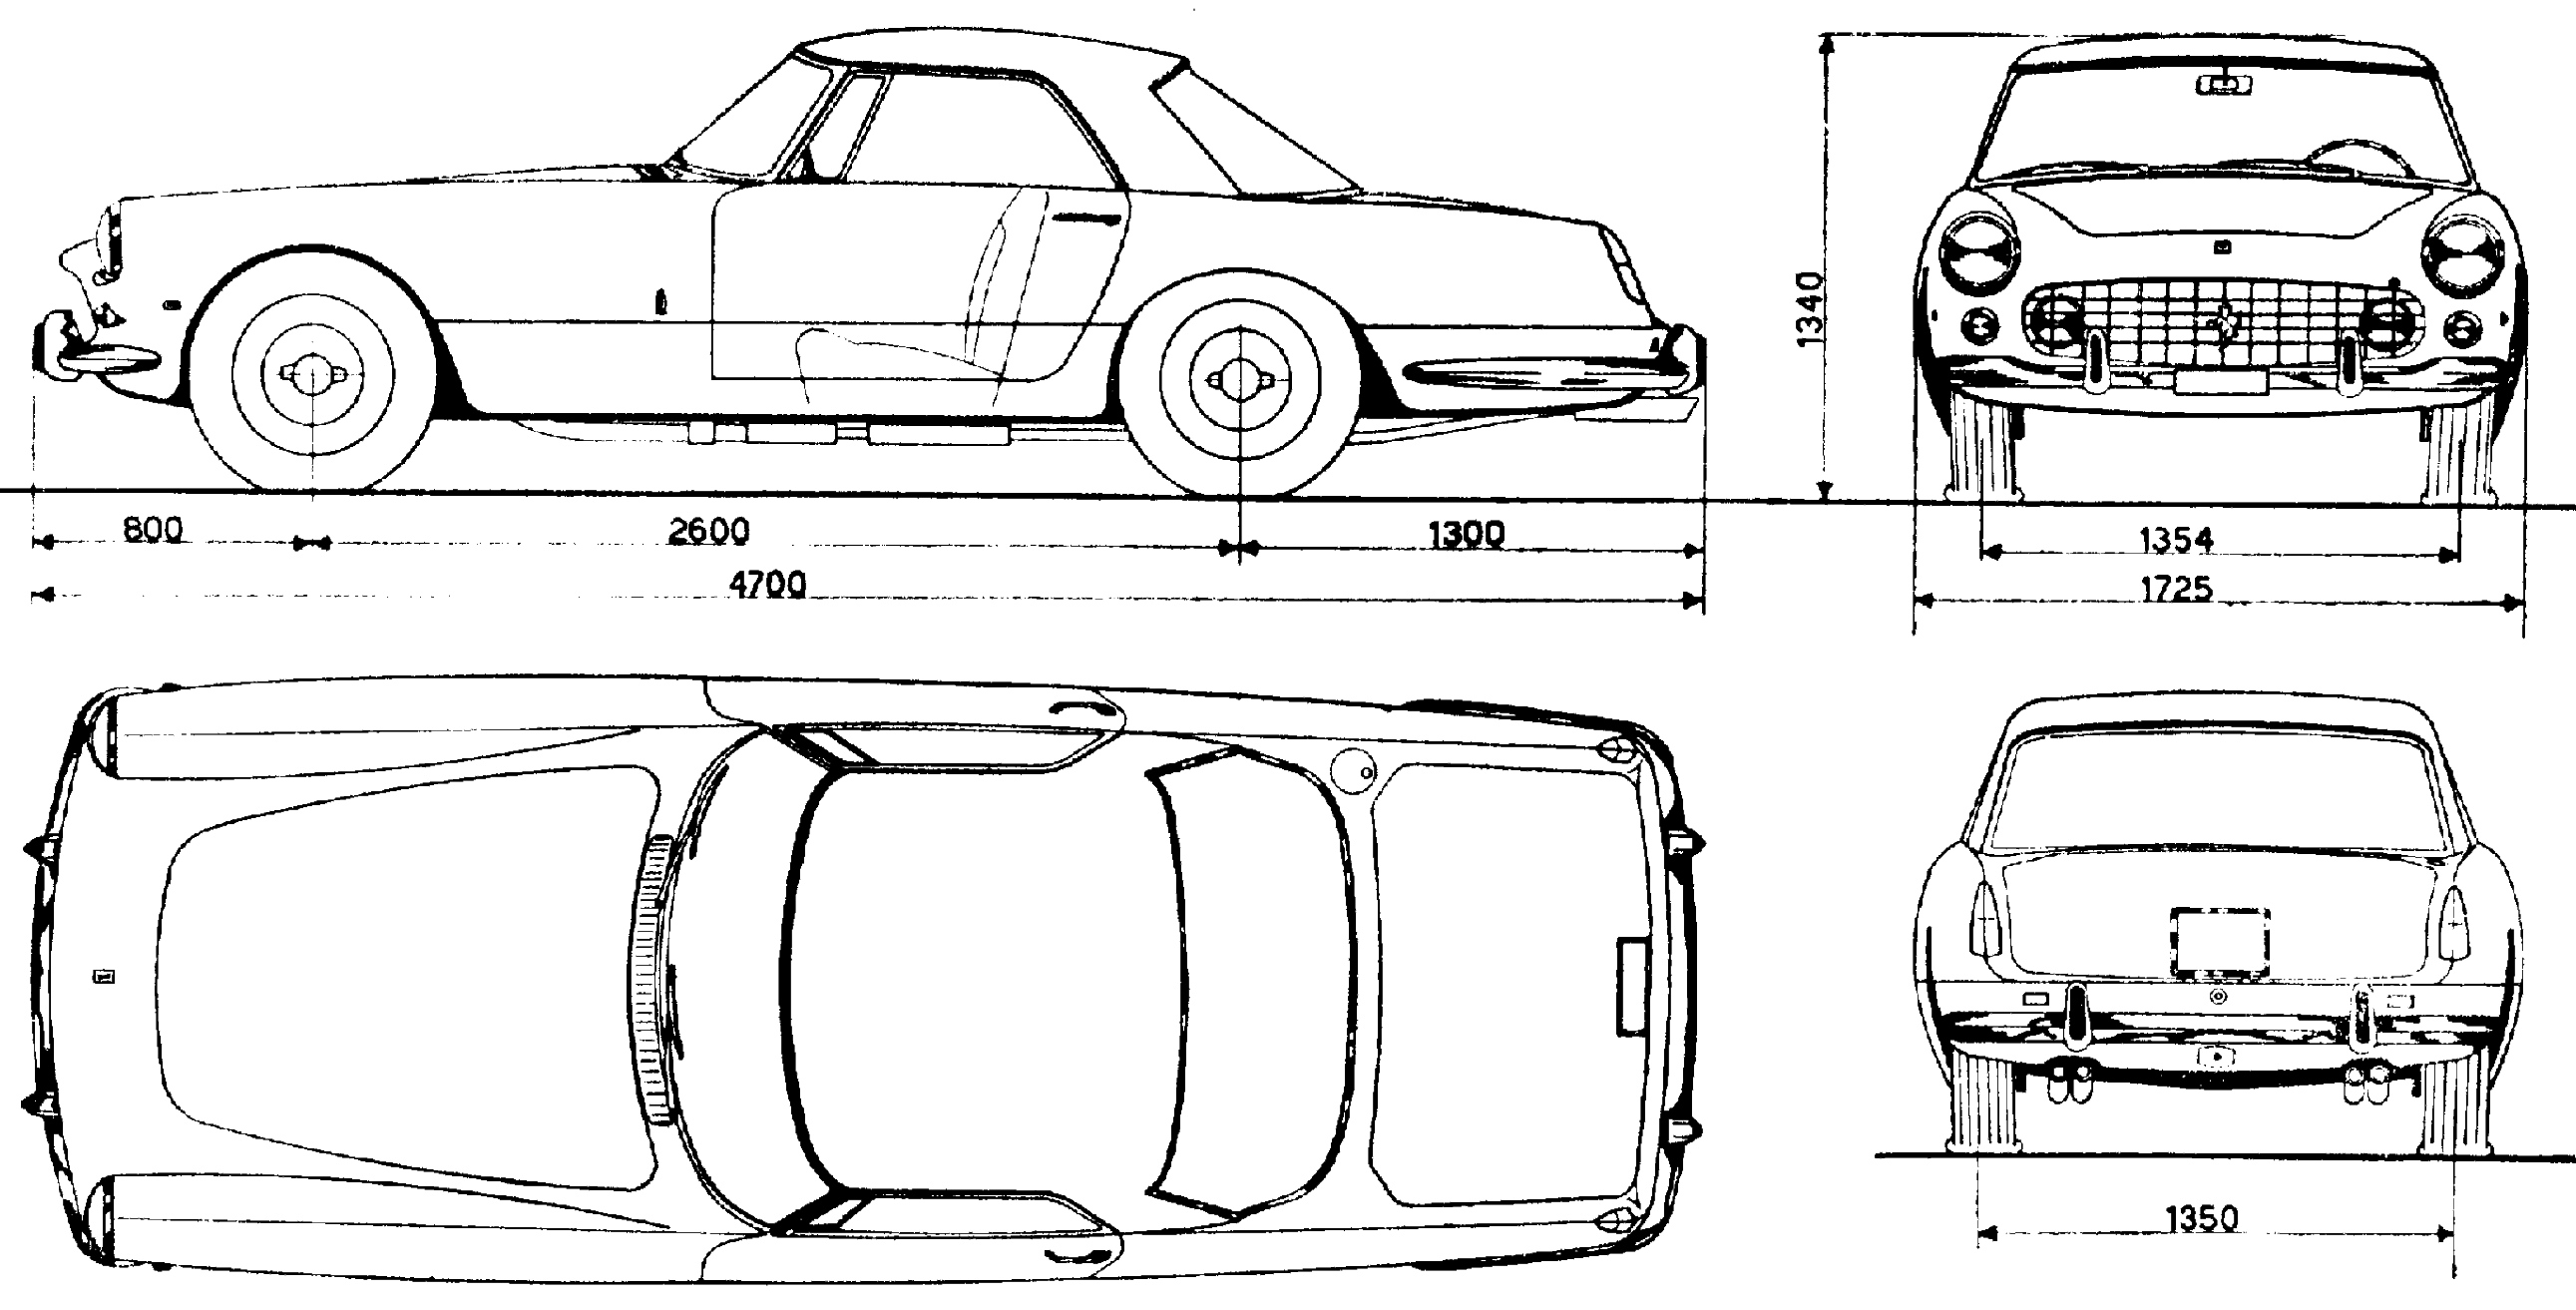 Ferrari 250 GT blueprint